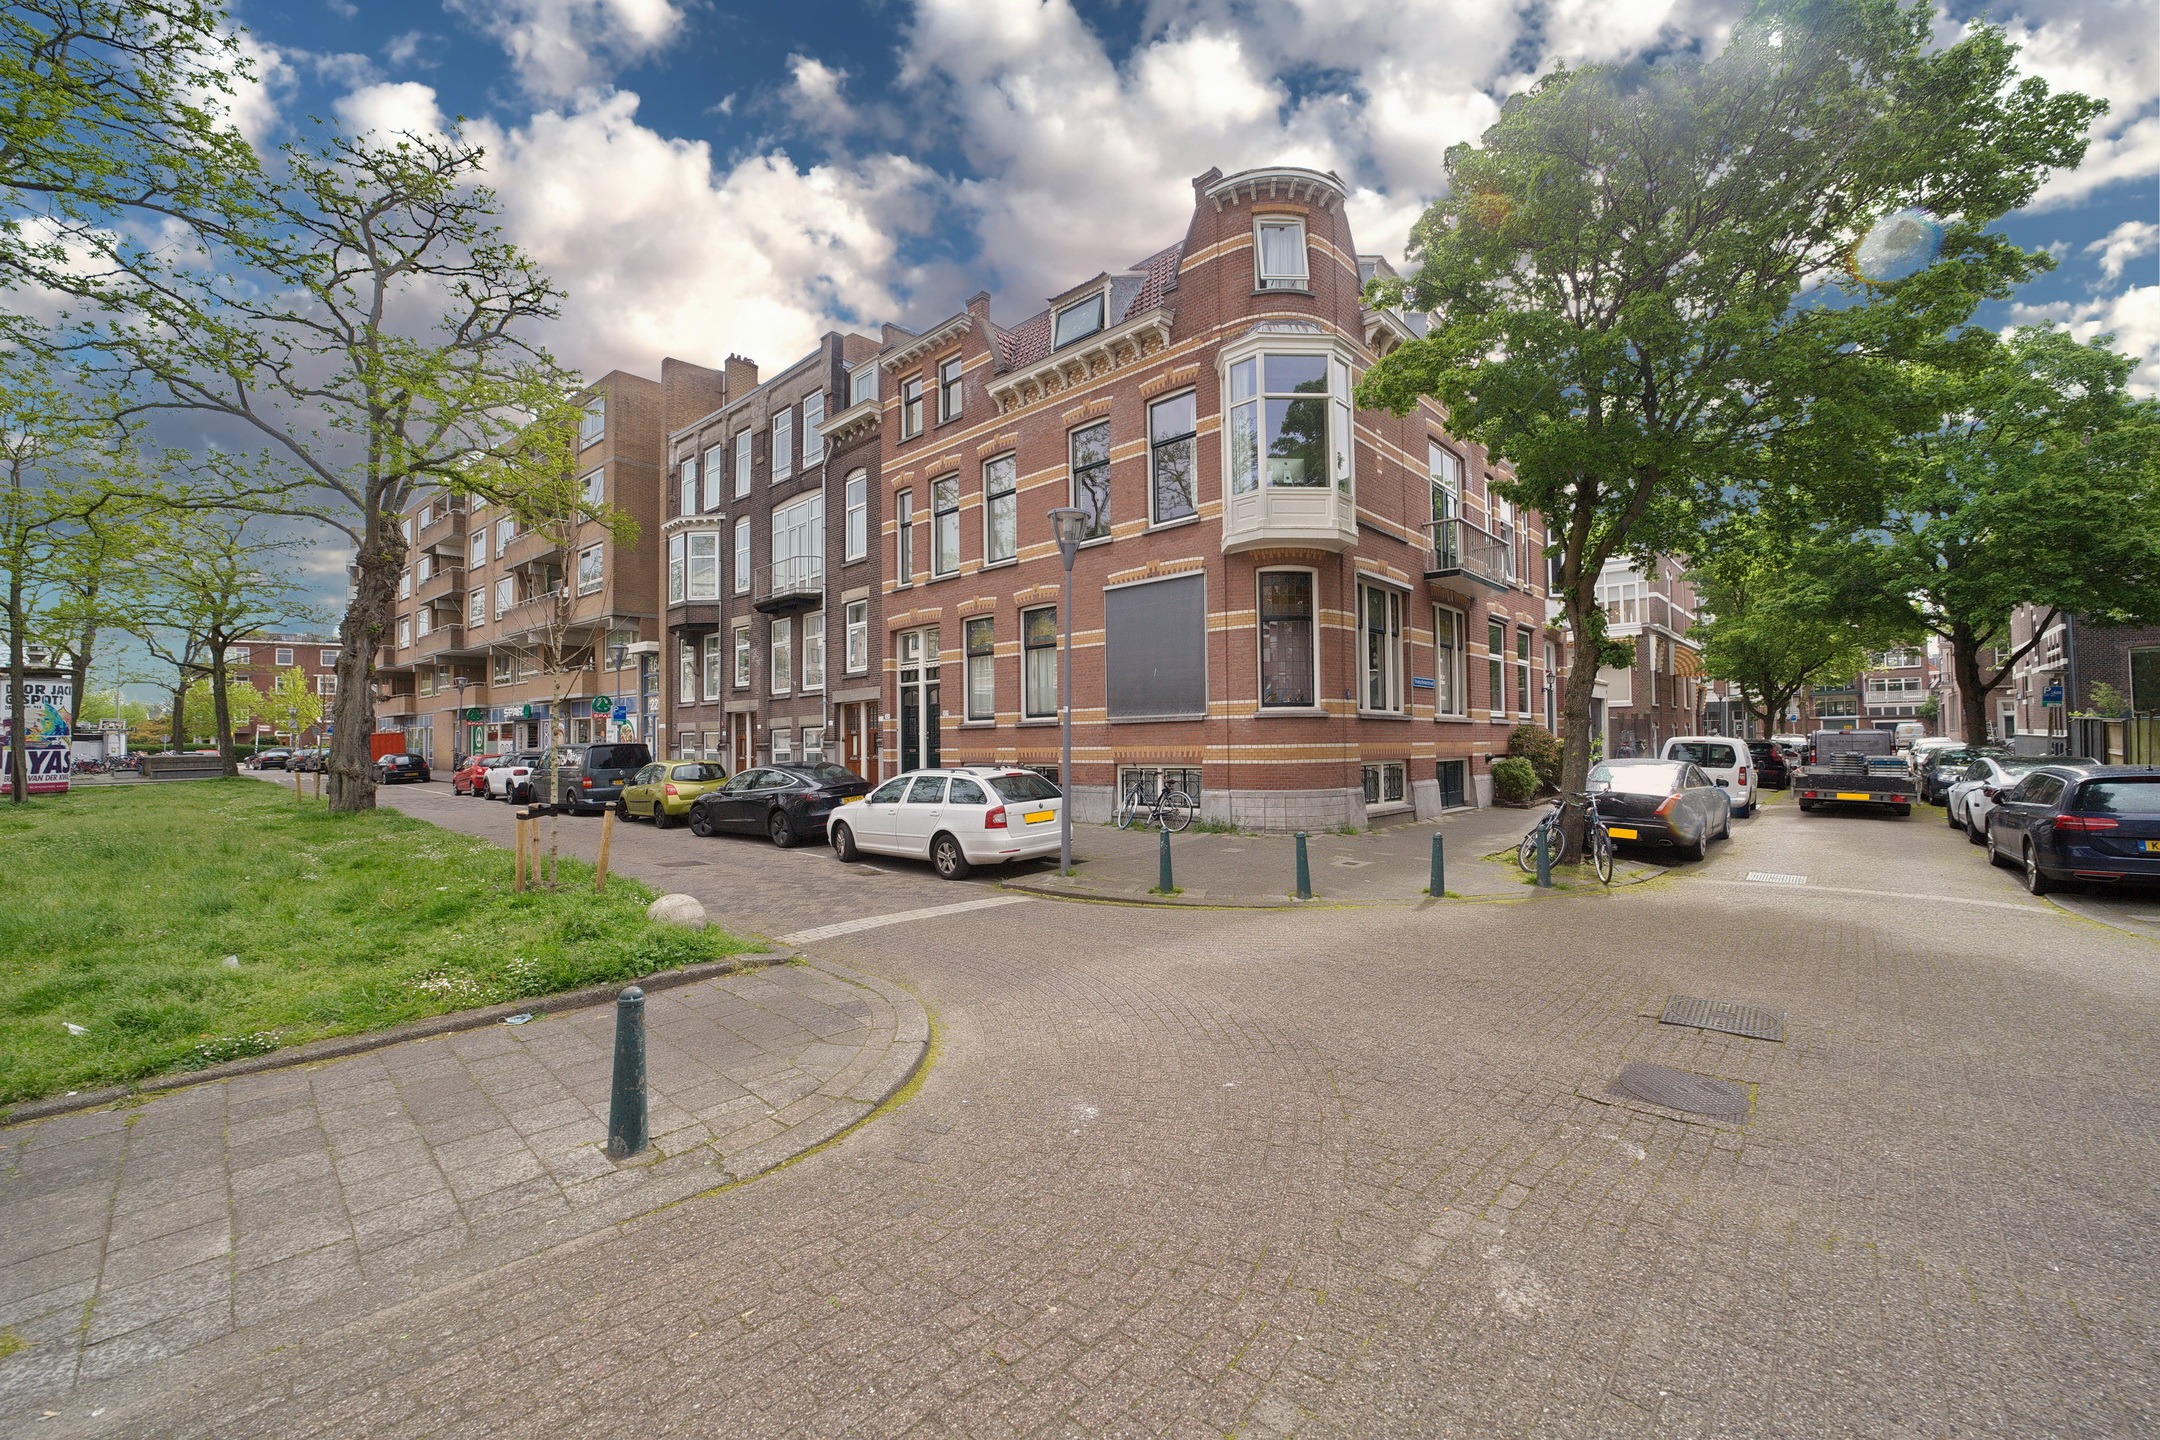 Kamerverhuurpand - Rotterdam - Voorschoterstraat